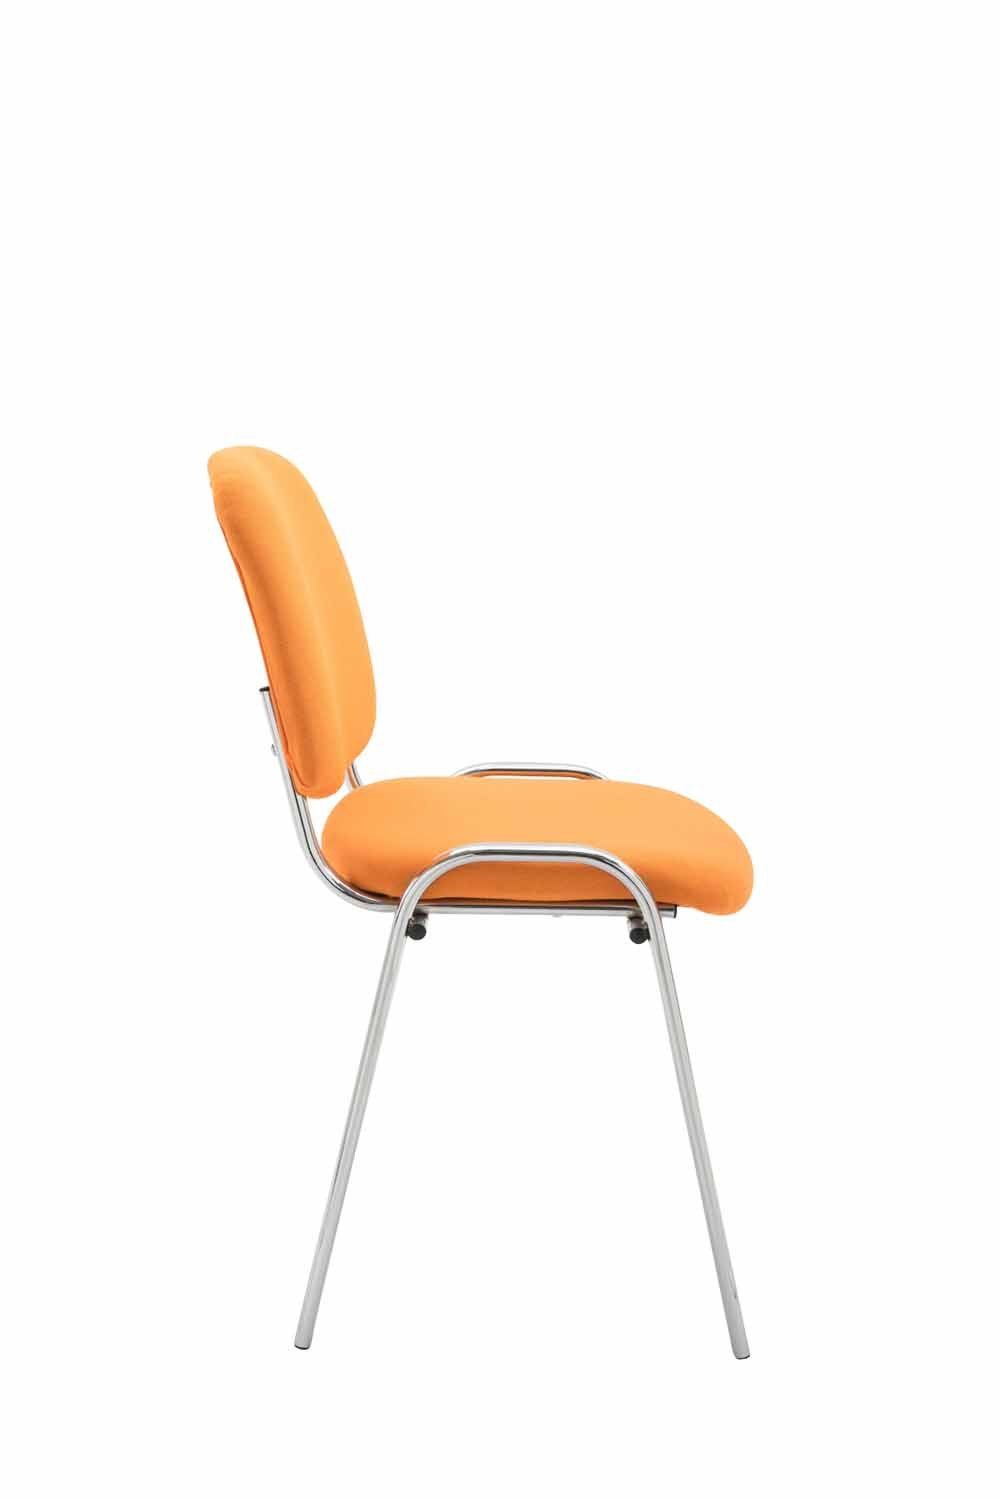 (Besprechungsstuhl Messestuhl), orange chrom Keen mit - Stoff hochwertiger TPFLiving Warteraumstuhl Sitzfläche: Konferenzstuhl - Gestell: Besucherstuhl - Polsterung Metall -